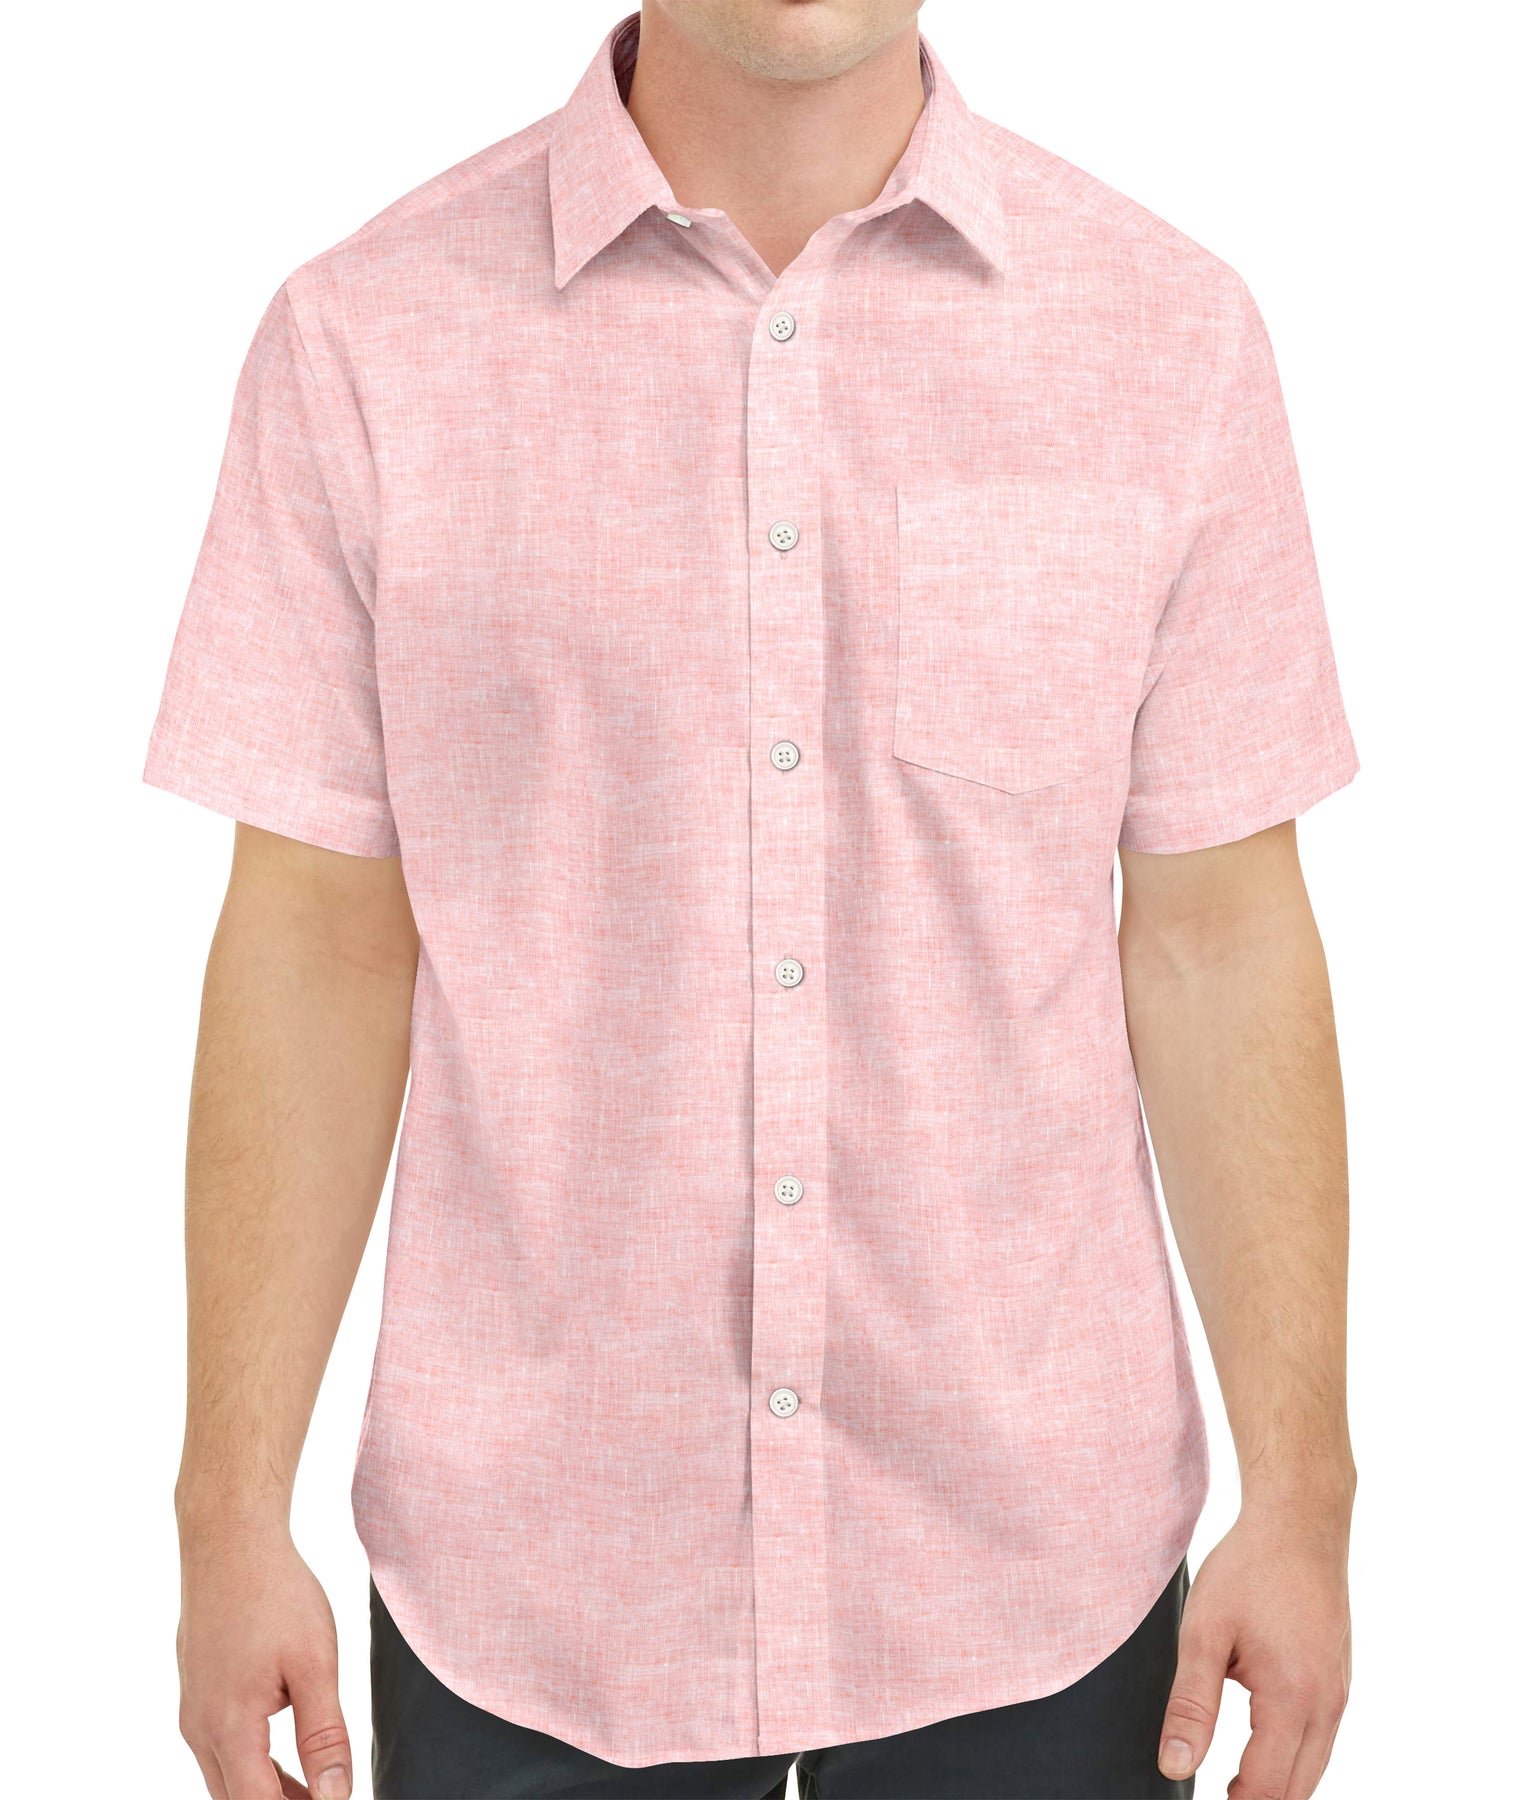 Men's 100% European Linen Short Sleeve Shirt  Short sleeve linen shirt,  European linens, Linen short